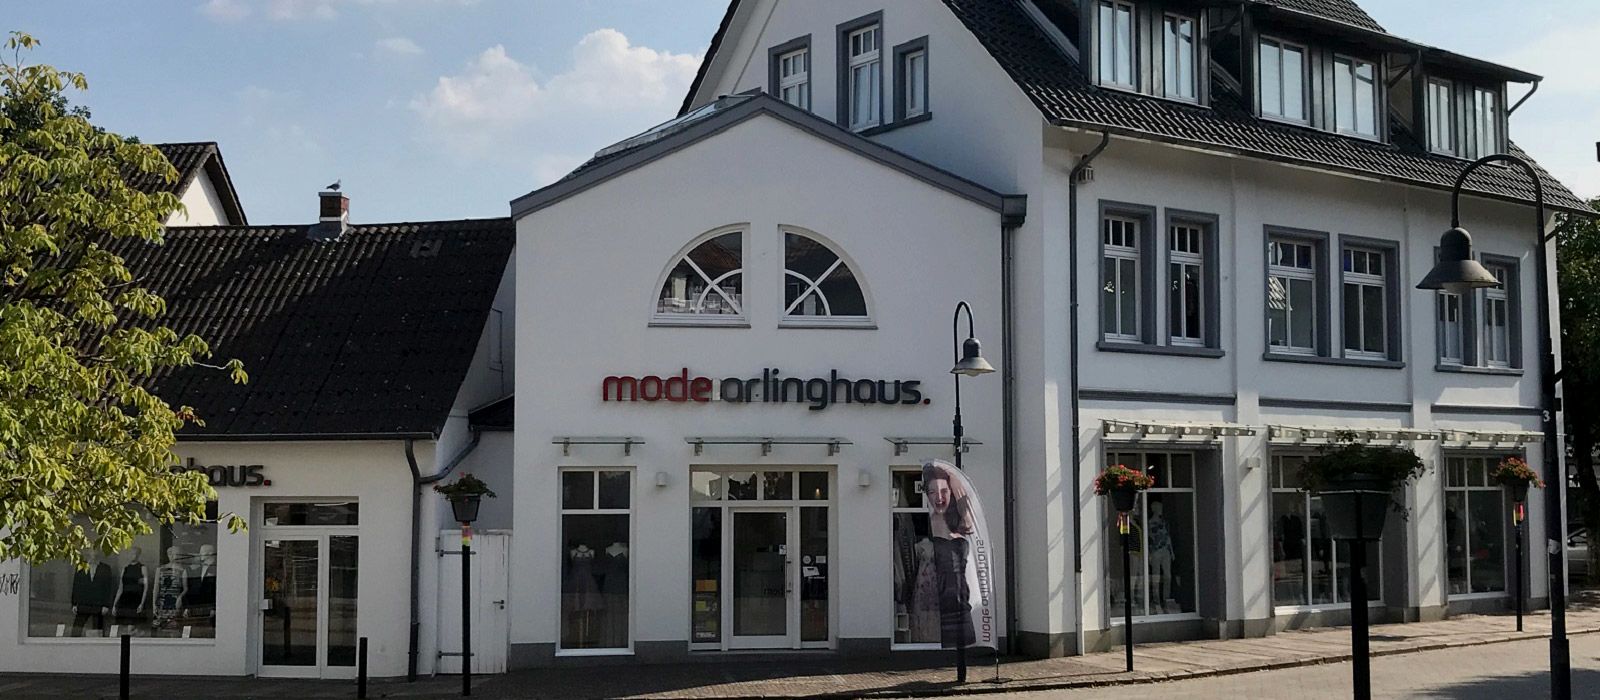 Mode Arlinghaus